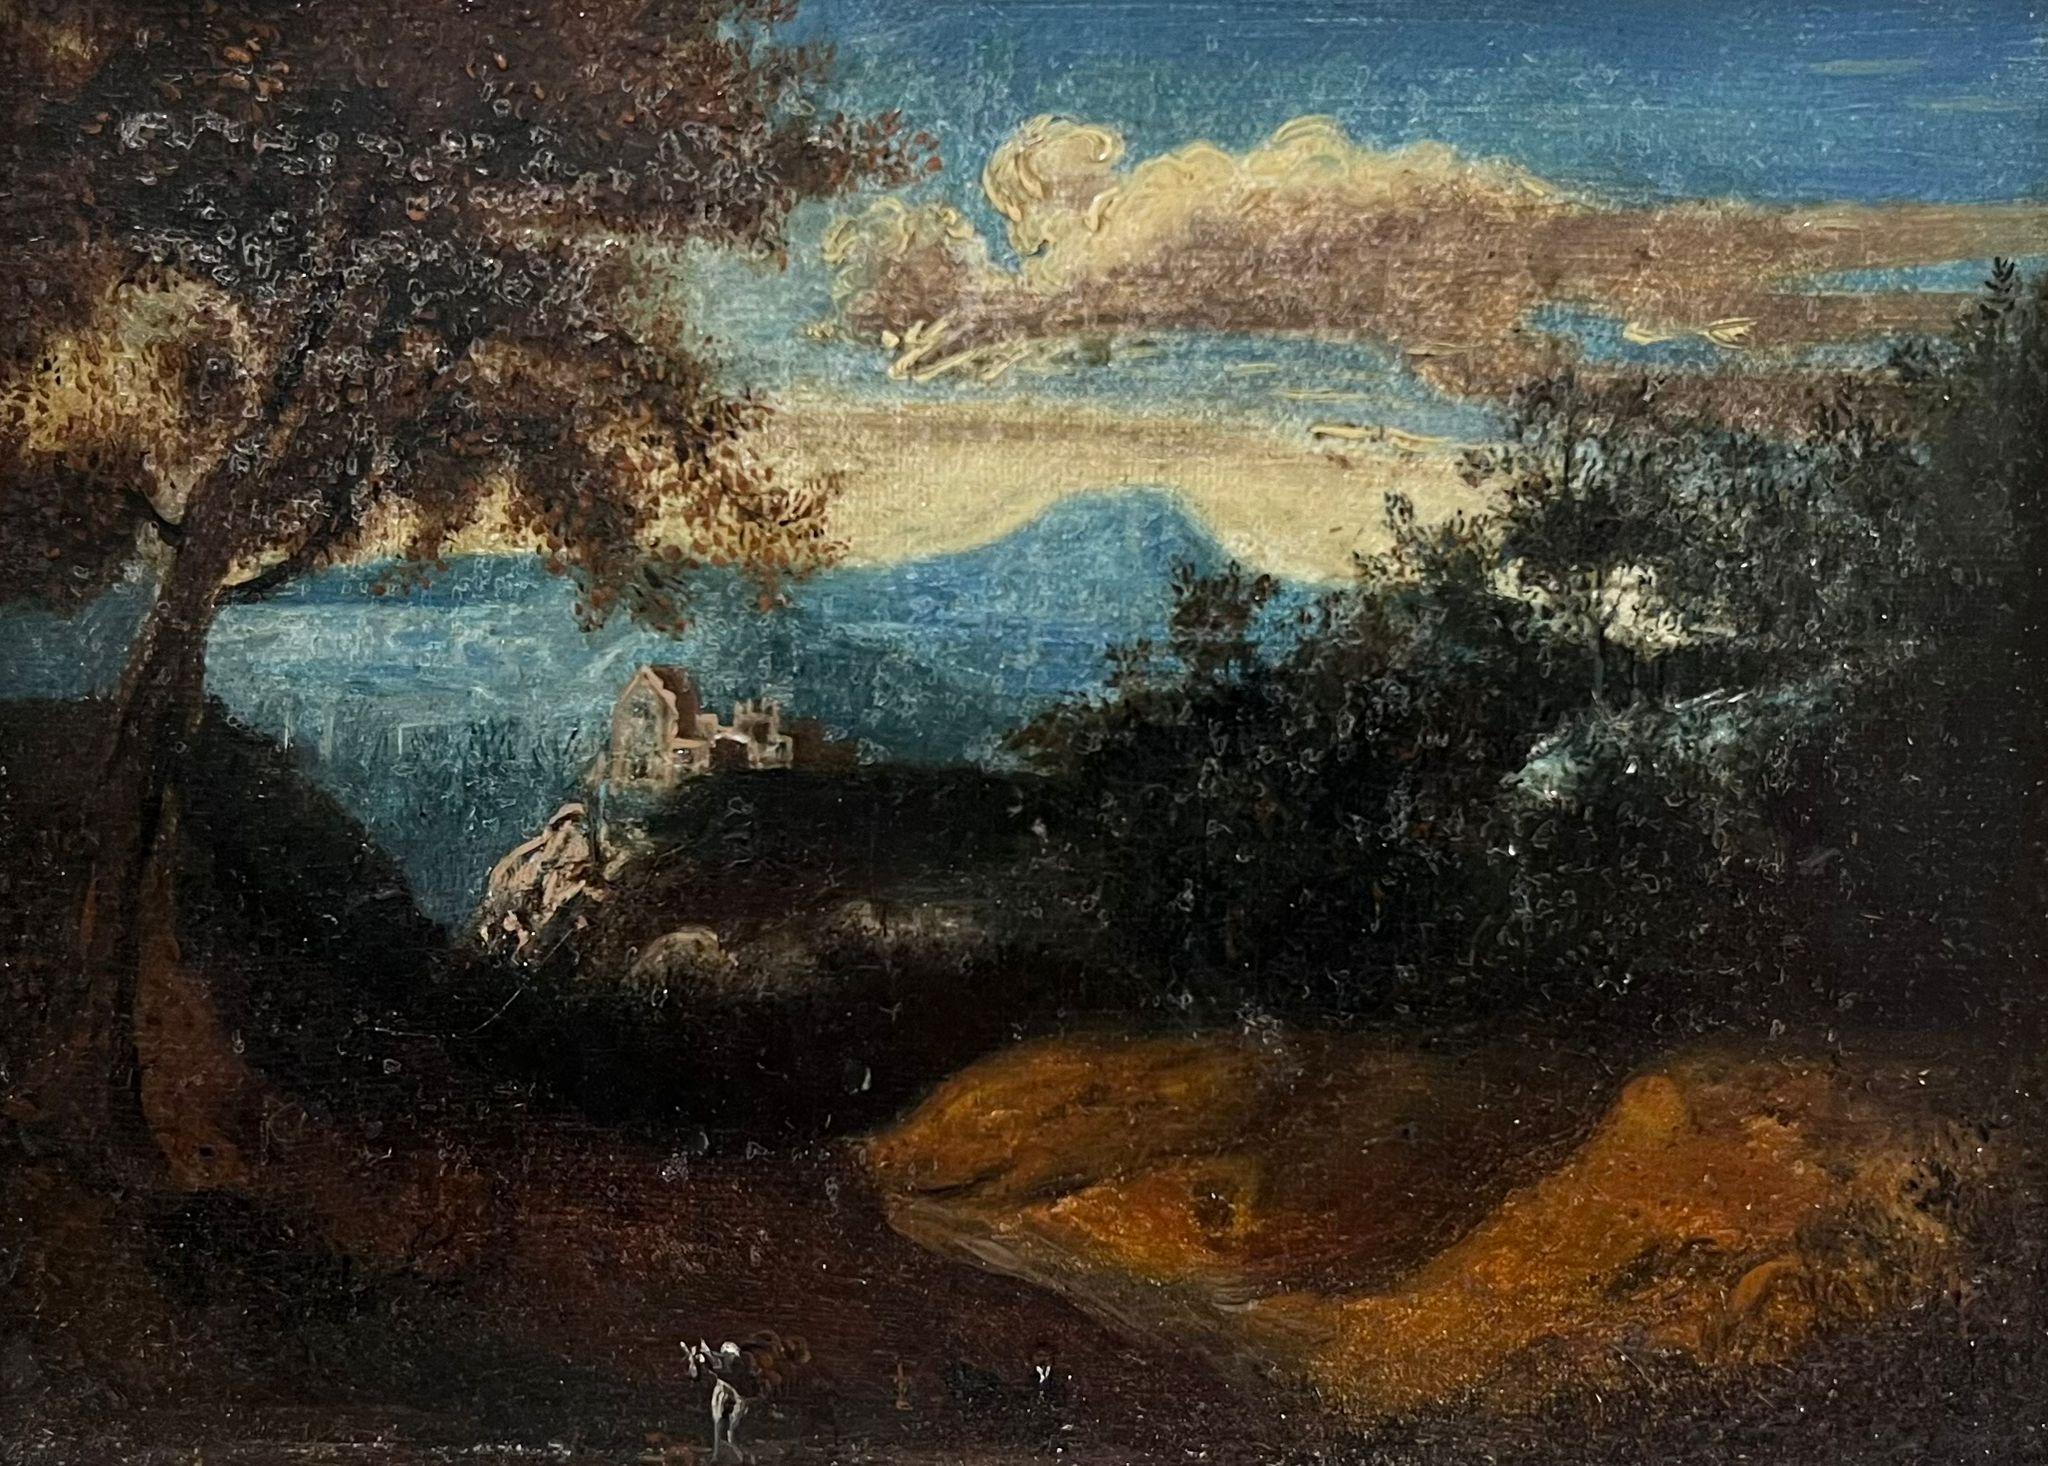 Landscape Painting French School - Belle peinture à l'huile du 18ème siècle French Old Master Figure dans un paysage d'Arcadie